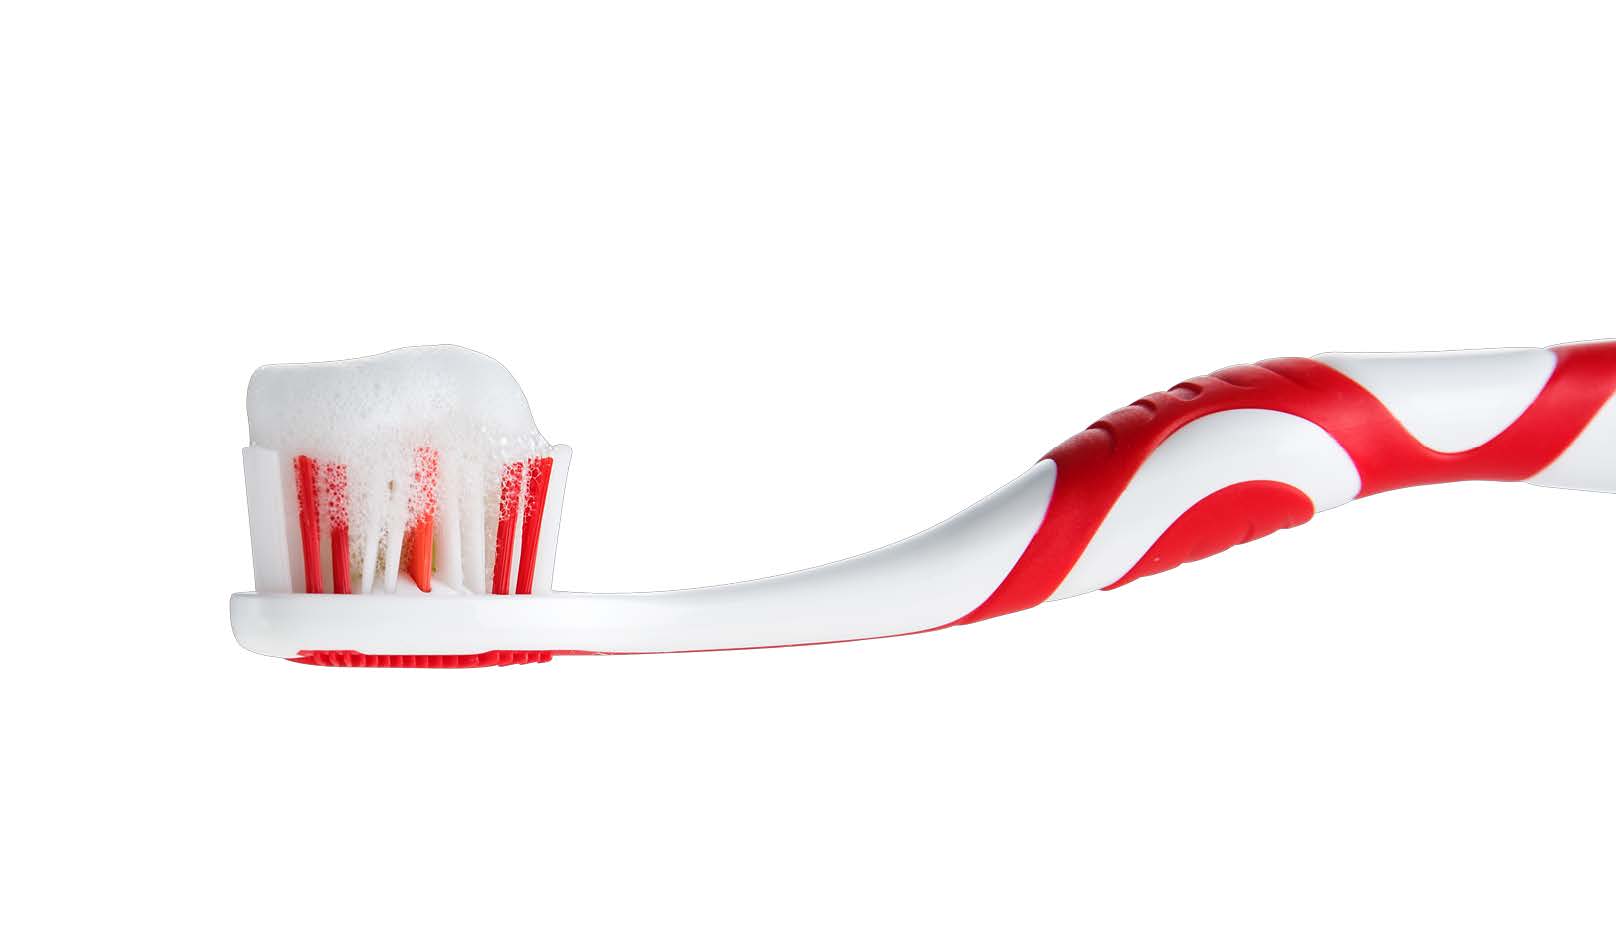 simplesmile foam toothpaste pds kopia Sida 1 Bild 0003